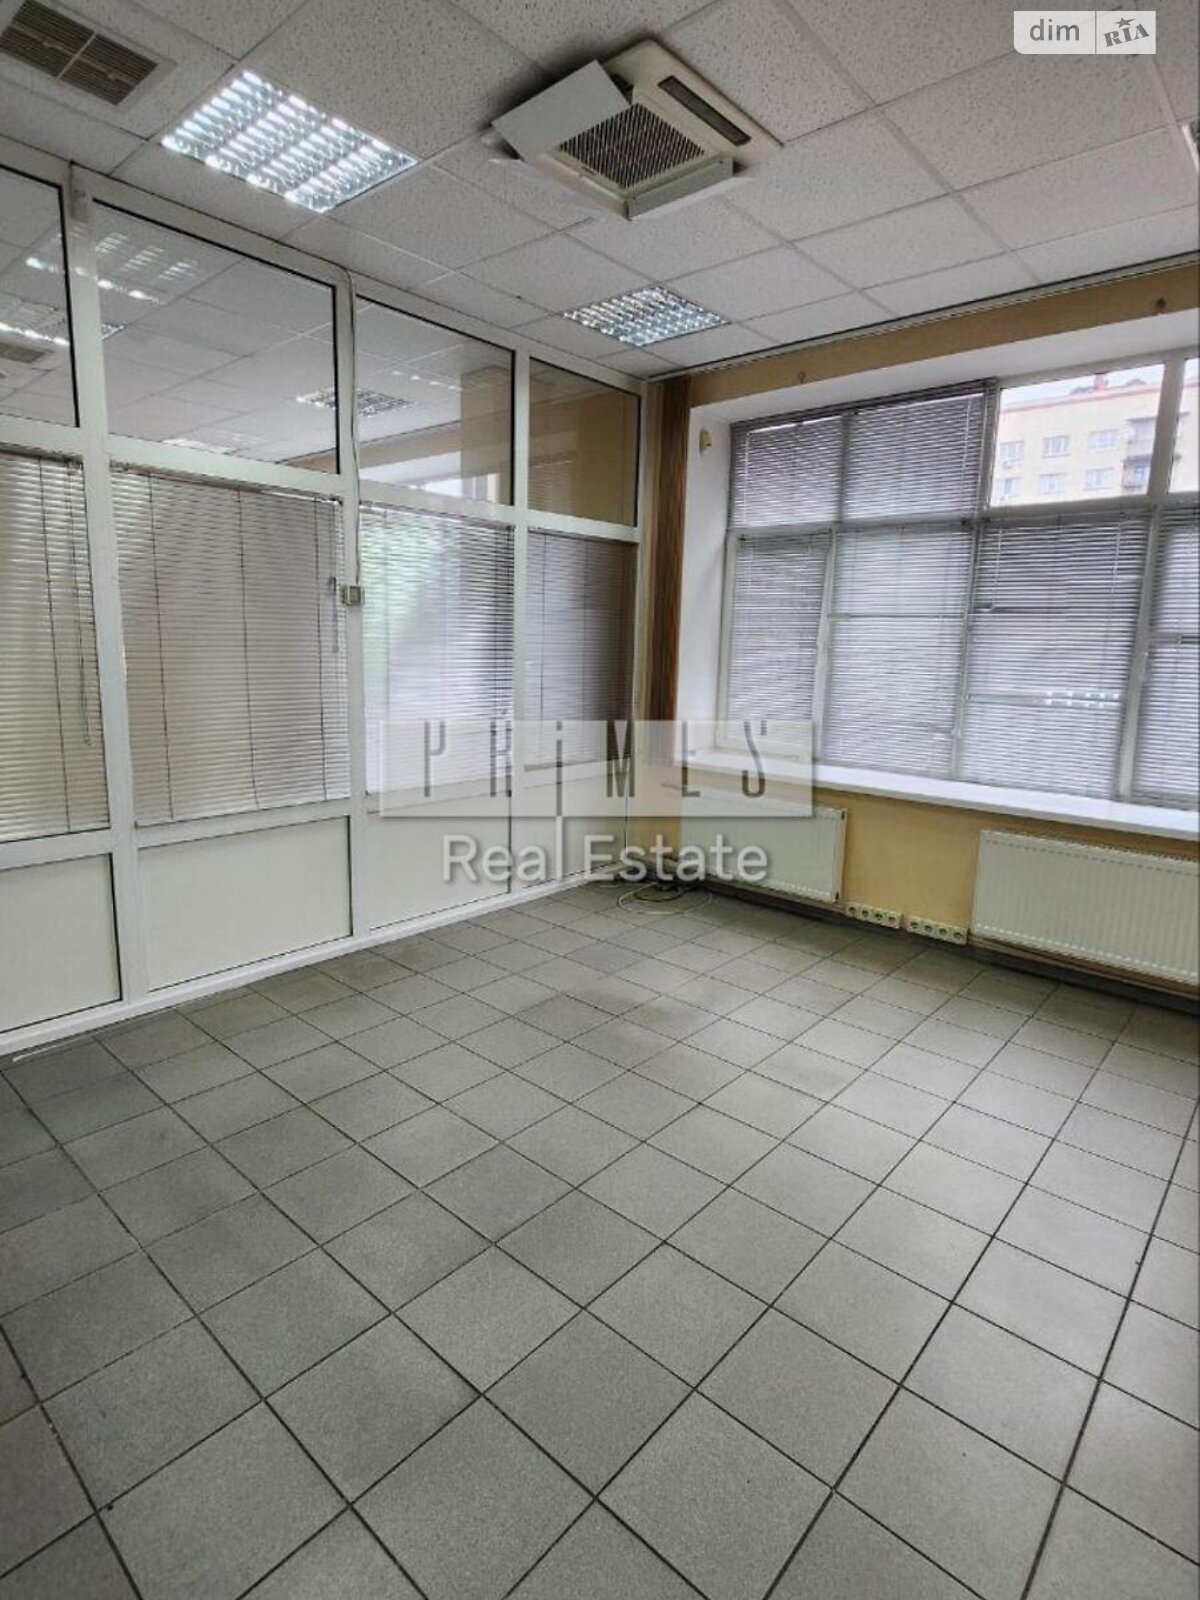 Аренда офисного помещения в Киеве, Малевича 86Л, помещений - 1, этаж - 3 фото 1